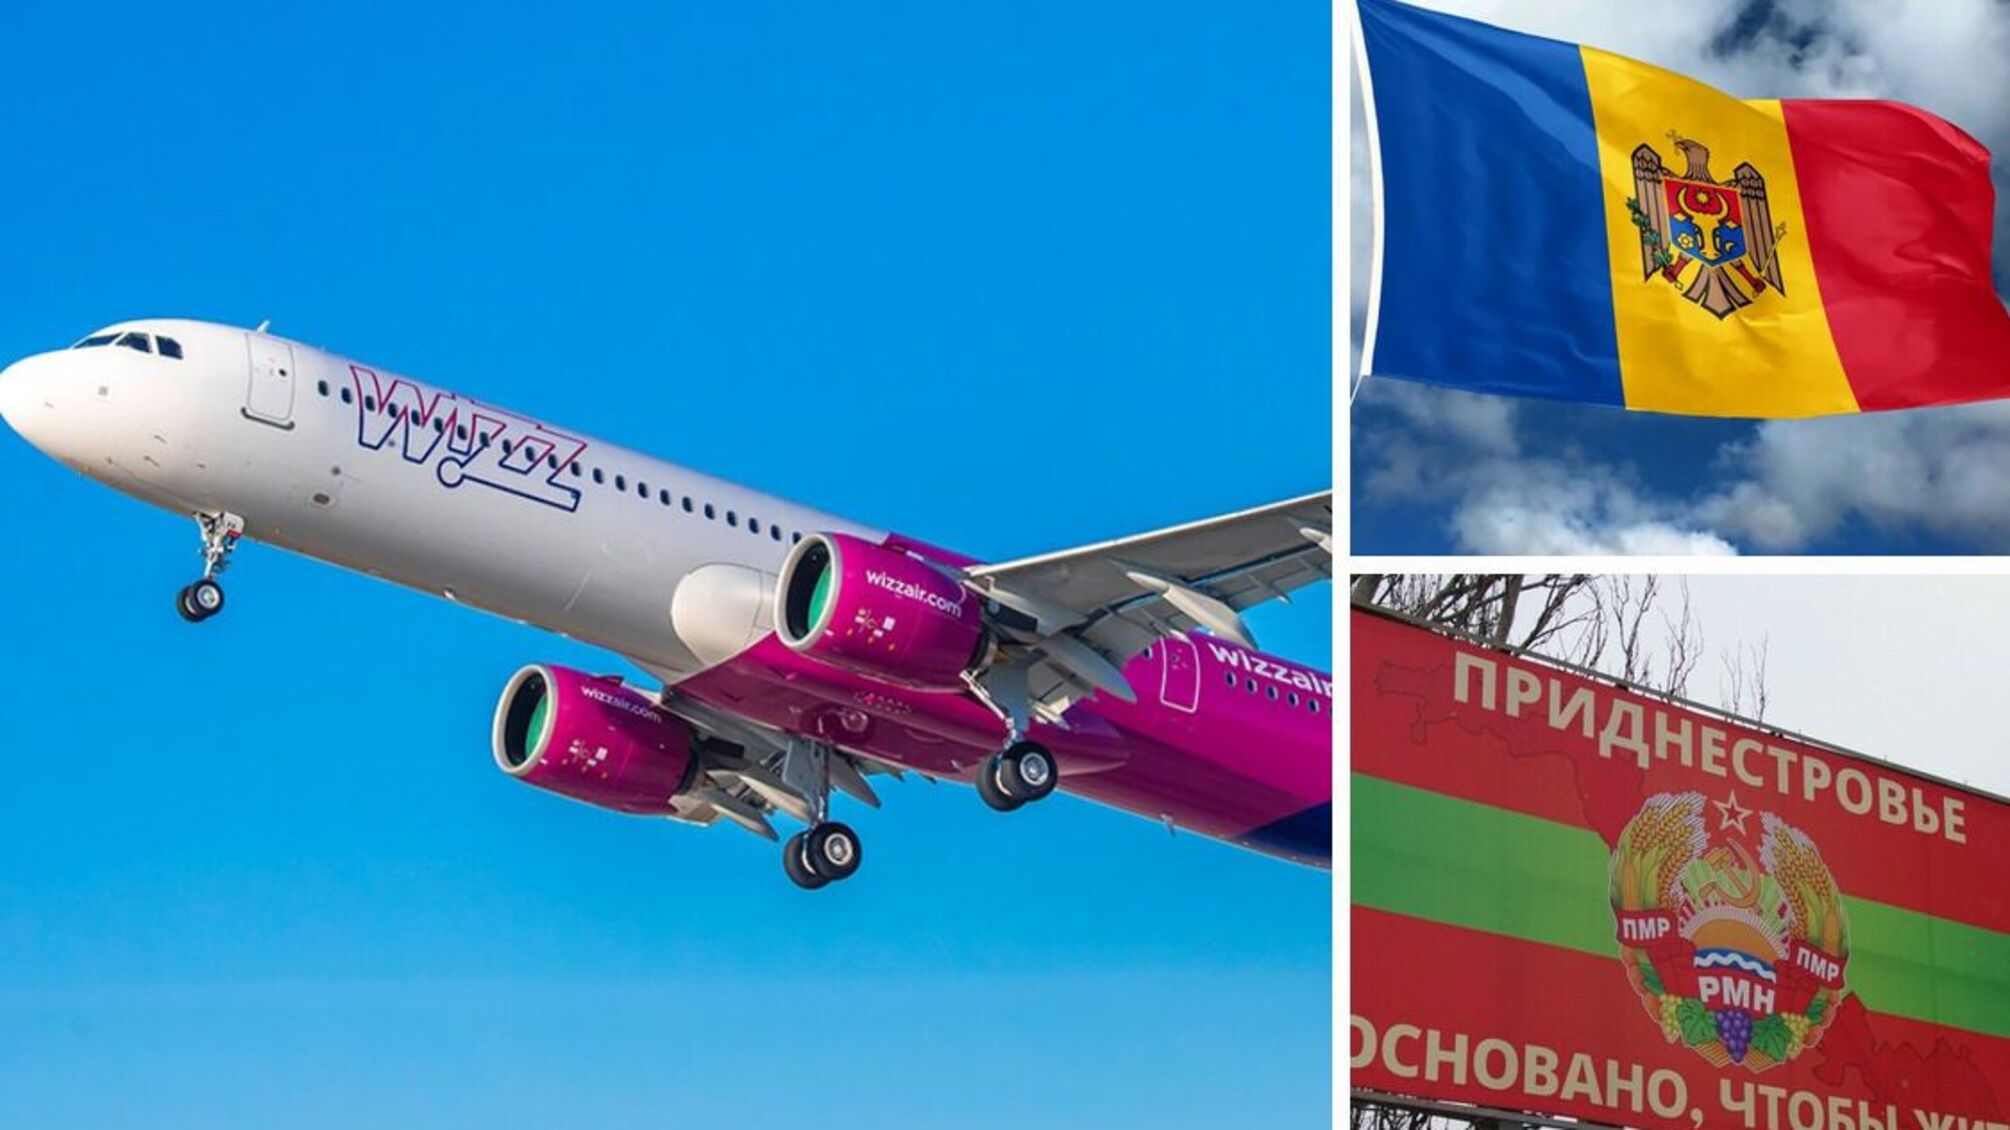 Приднестровье: одна из авиакомпаний прекращает авиасообщение с Молдовой – что известно